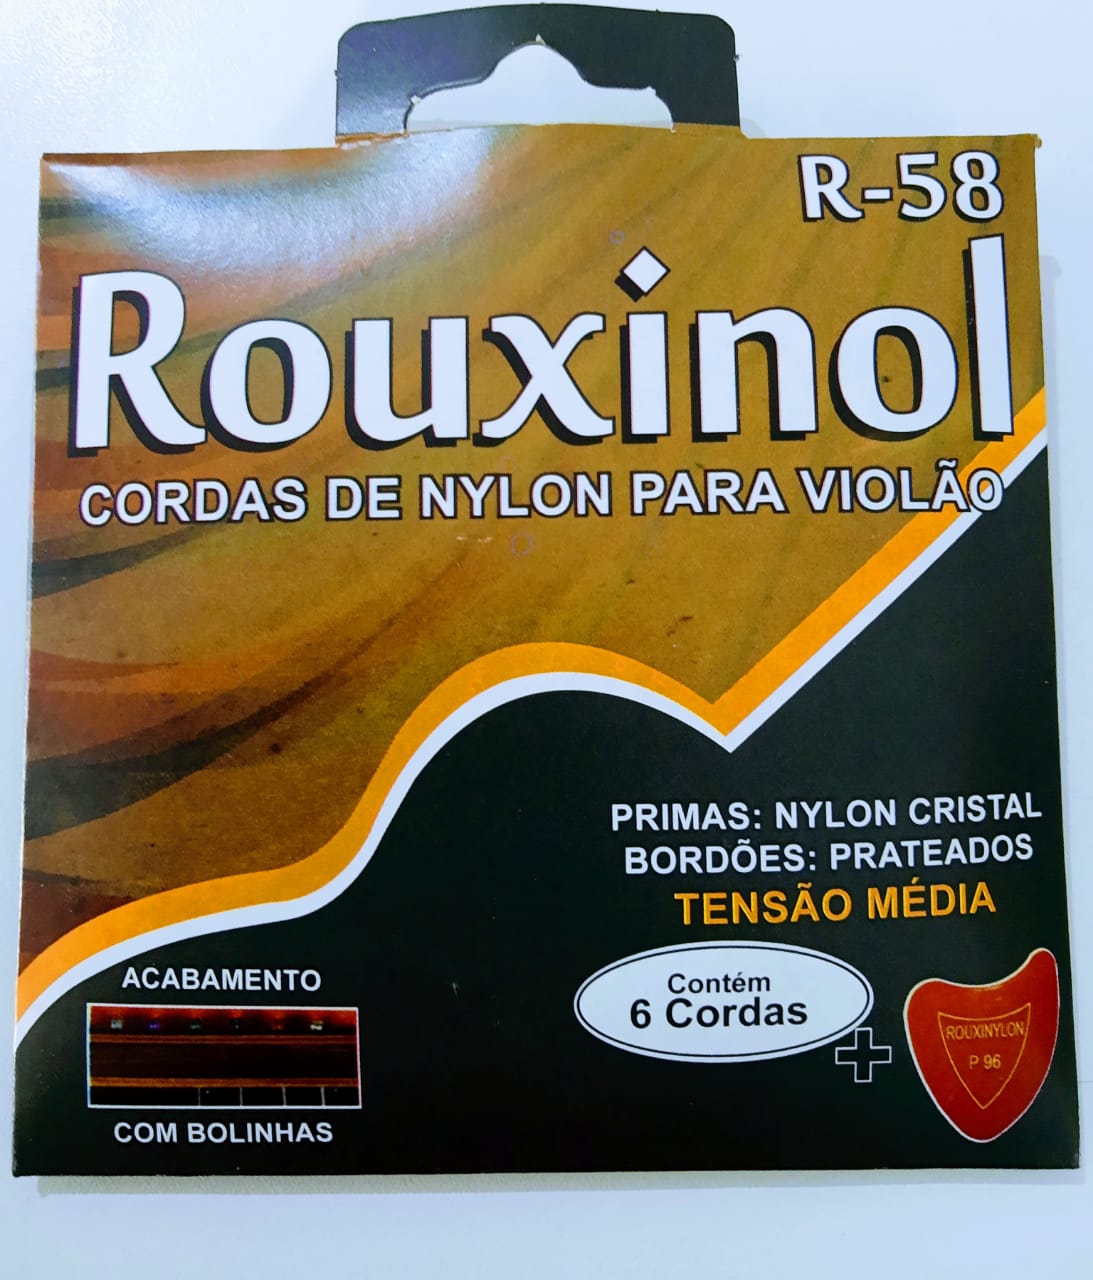 Cordas de Nylon para Violão - Rouxinol R-58 - DaCidadeShop